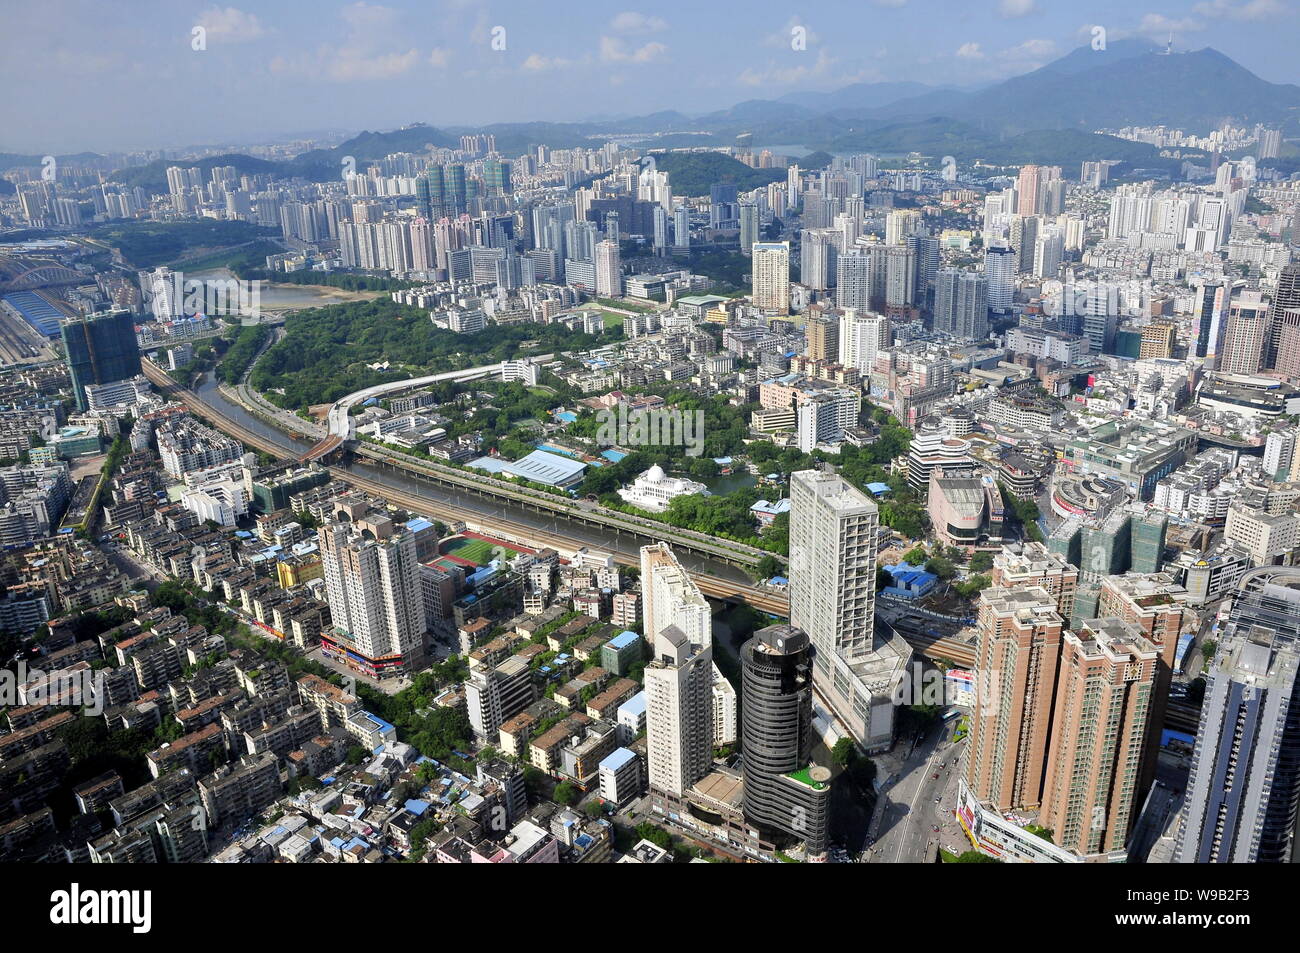 Anzeigen von Clustern von Wolkenkratzern, Hochhaus Büro- und Wohngebäuden Mehrfamilienhäusern in Shenzhen City, South China Guangdong Provinz, 10. August 201 Stockfoto